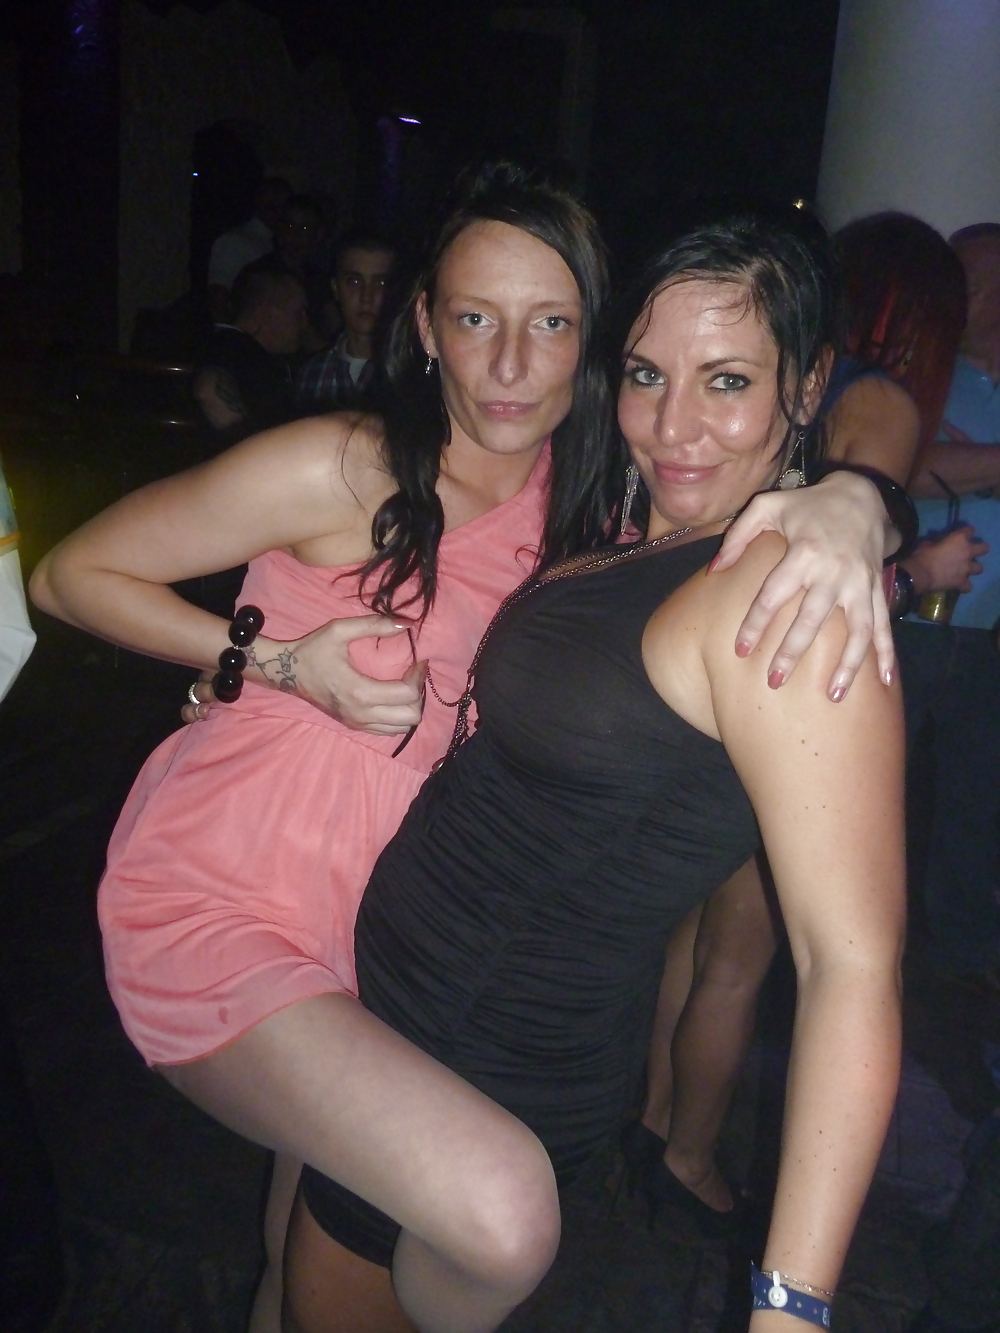 Sex Having fun in club image